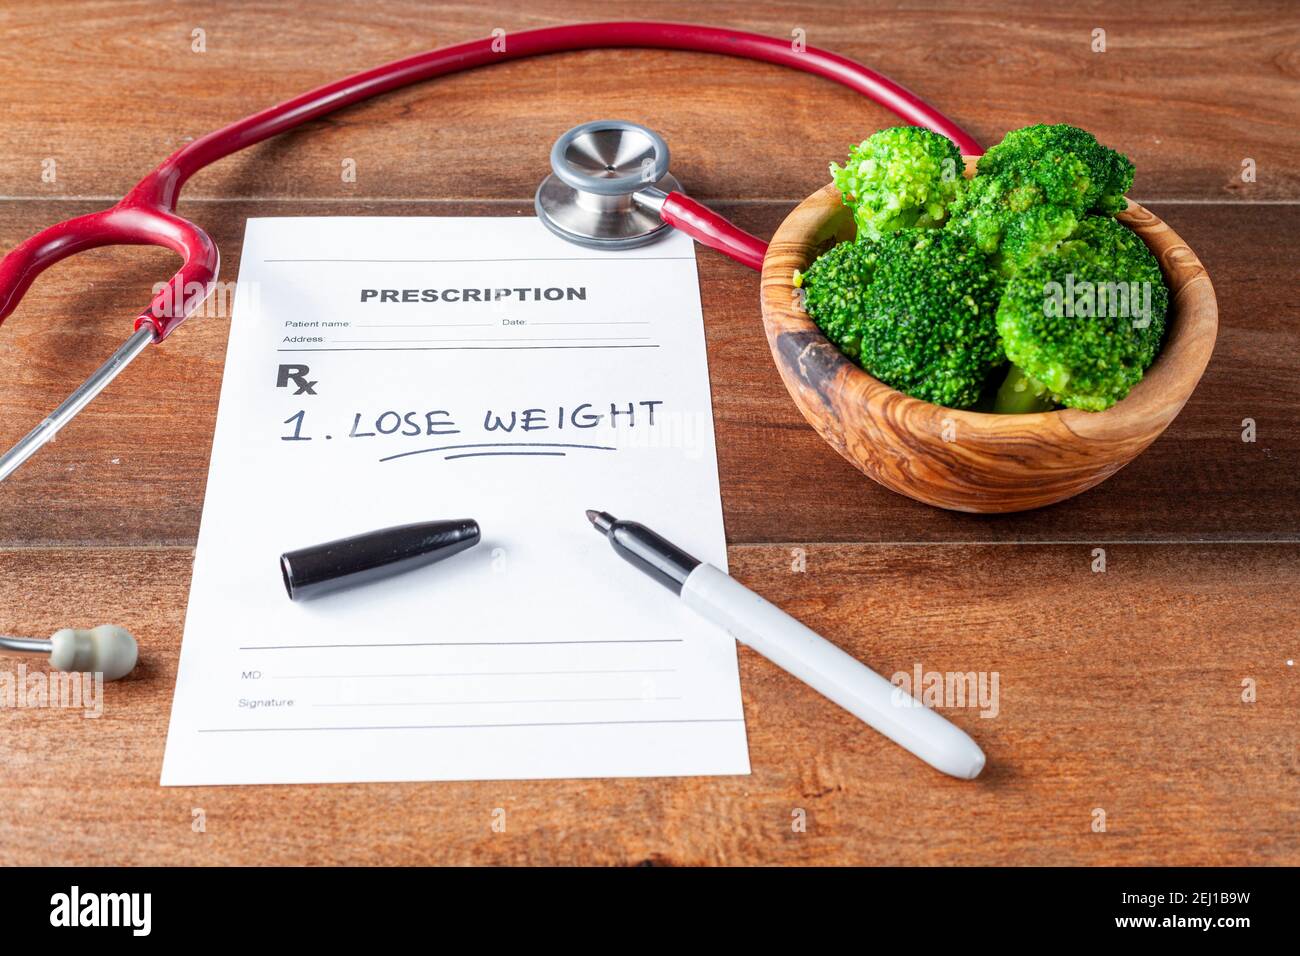 Nahaufnahme schräges Bild eines Arzttisches mit einer Schüssel mit Brokkoli, Stethoskop, Stift und einem Rezept, das einen Artikel 'Gewicht verlieren' verordnet hat Stockfoto